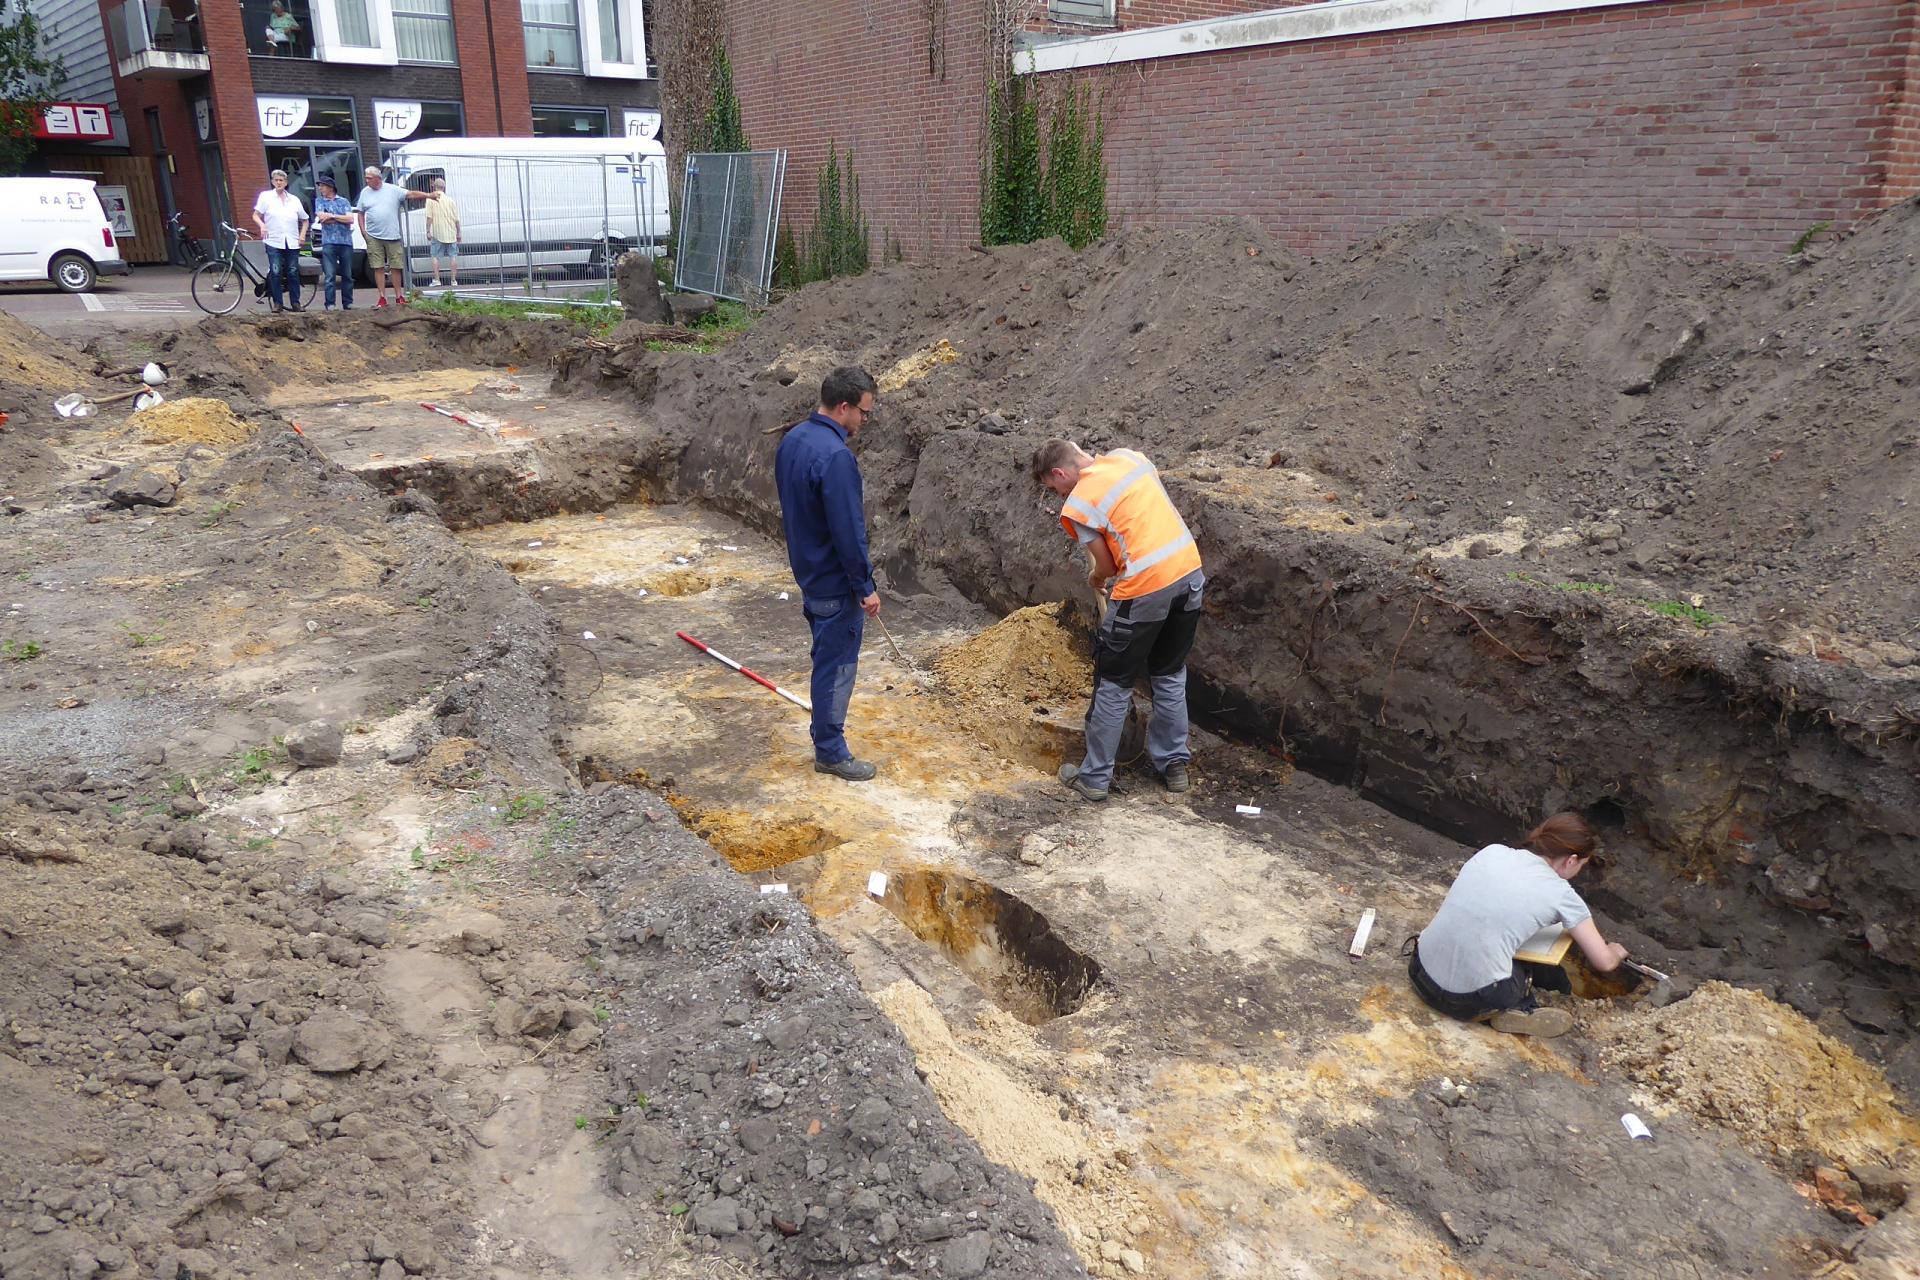 Drie mannen doen archeologisch onderzoek in een afgegraven stuk van een straat